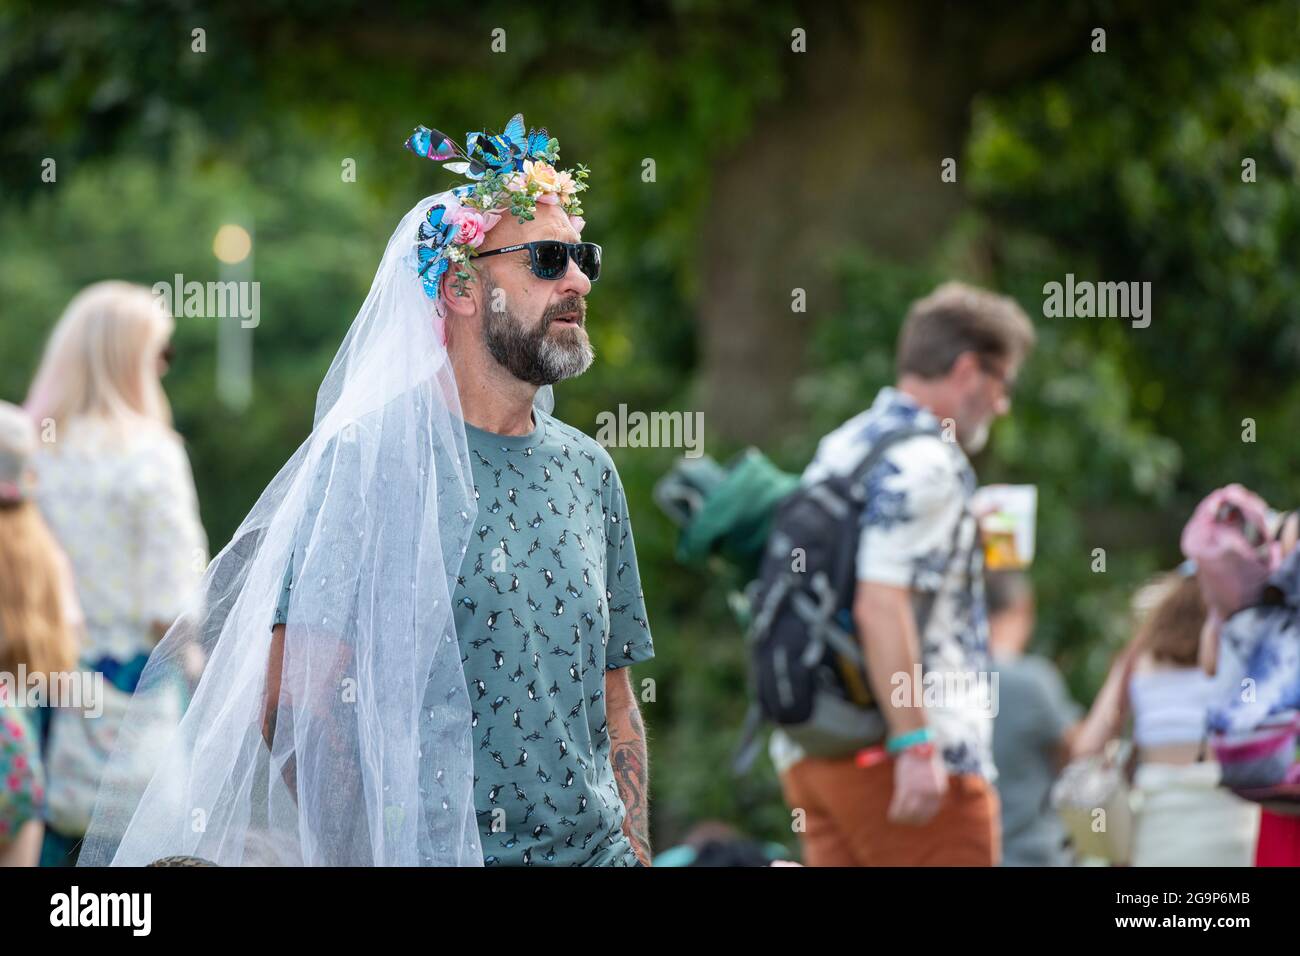 Uomo vestito da sposa immagini e fotografie stock ad alta risoluzione -  Alamy